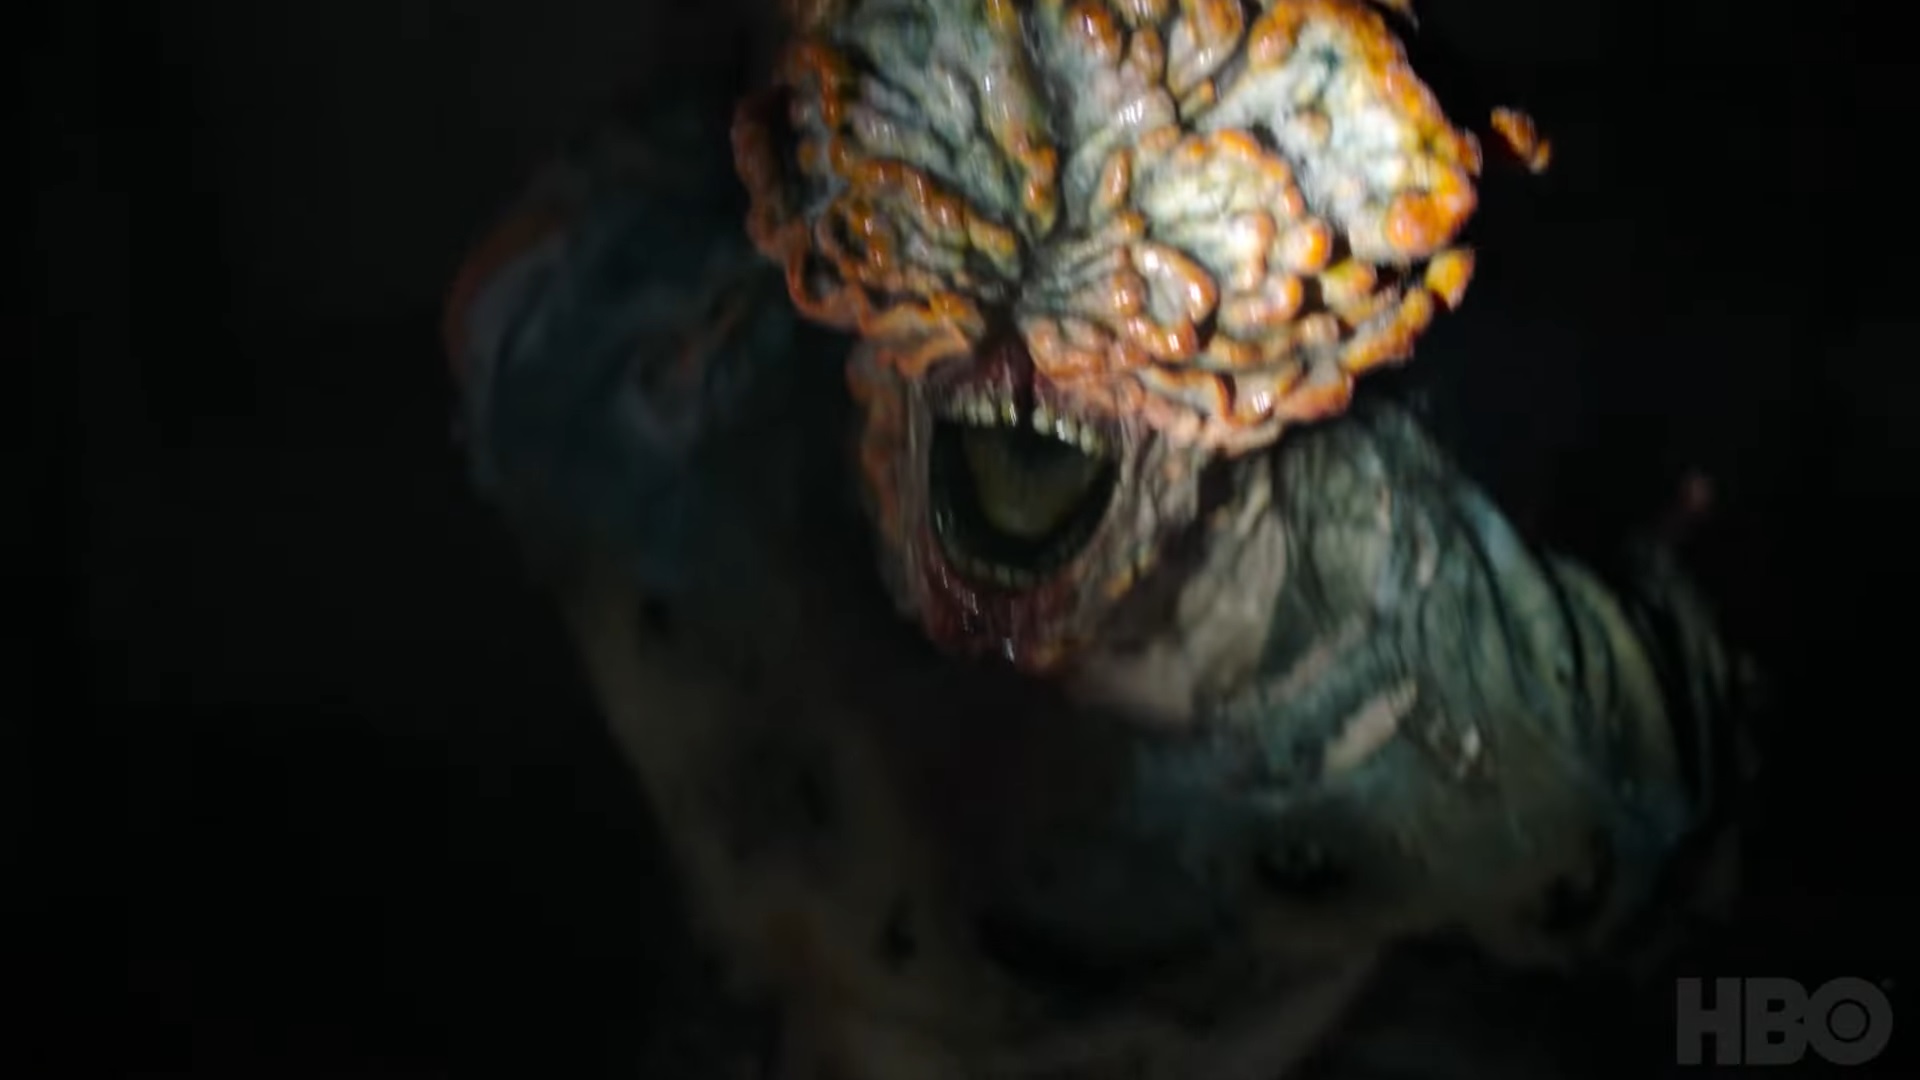 The Last of Us: La serie basada en el videojuego de Naughty Dog nos explica en su primer episodio lo peligroso que es el hongo Cordyceps